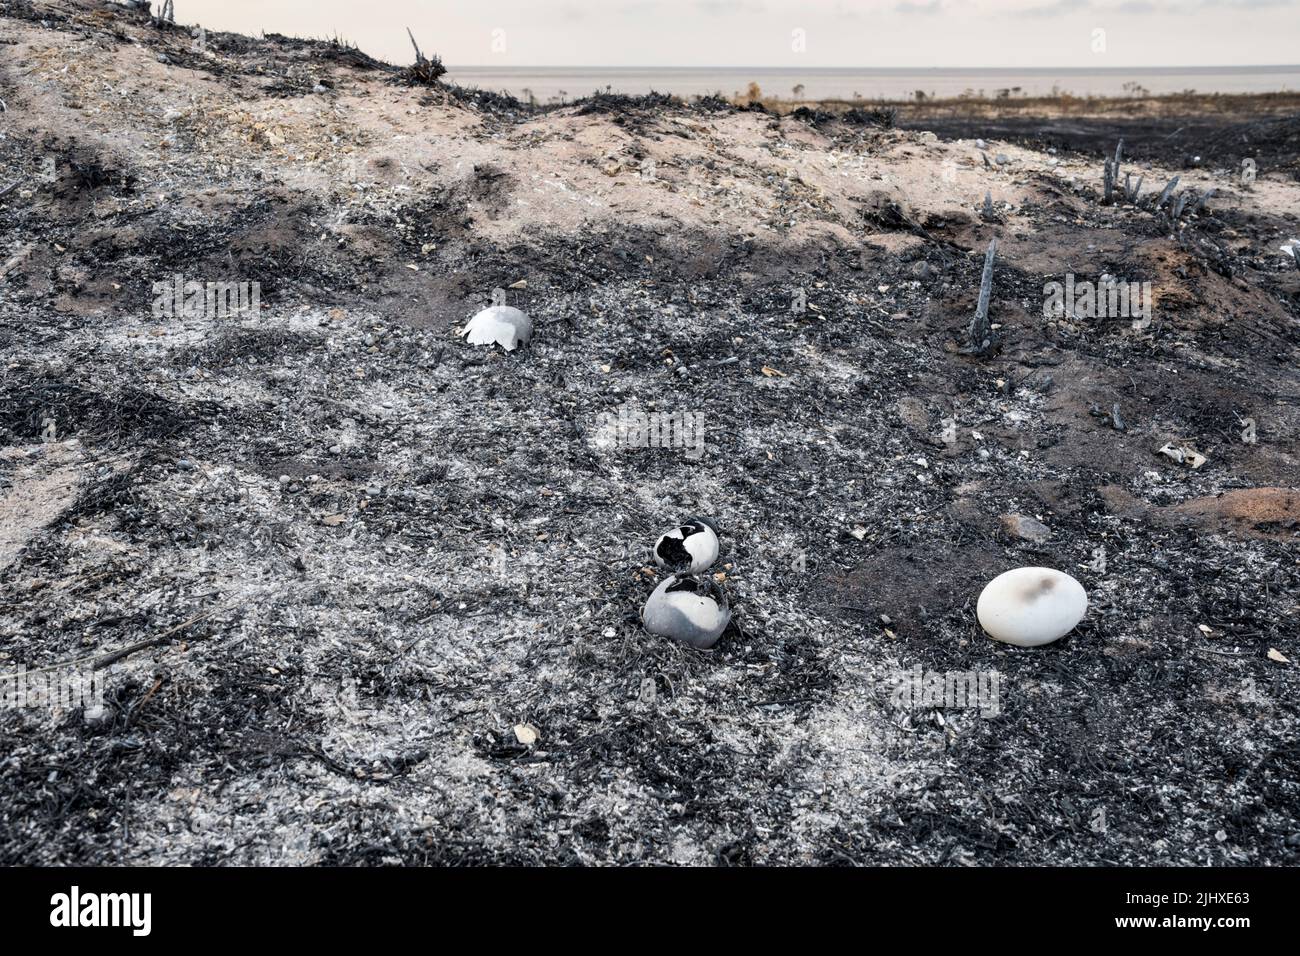 Huevos de aves silvestres destruidos en el fuego de la salud en el parque nacional de Snettisham, en la costa este del Wash, durante la ola de calor de julio de 2022. Foto de stock